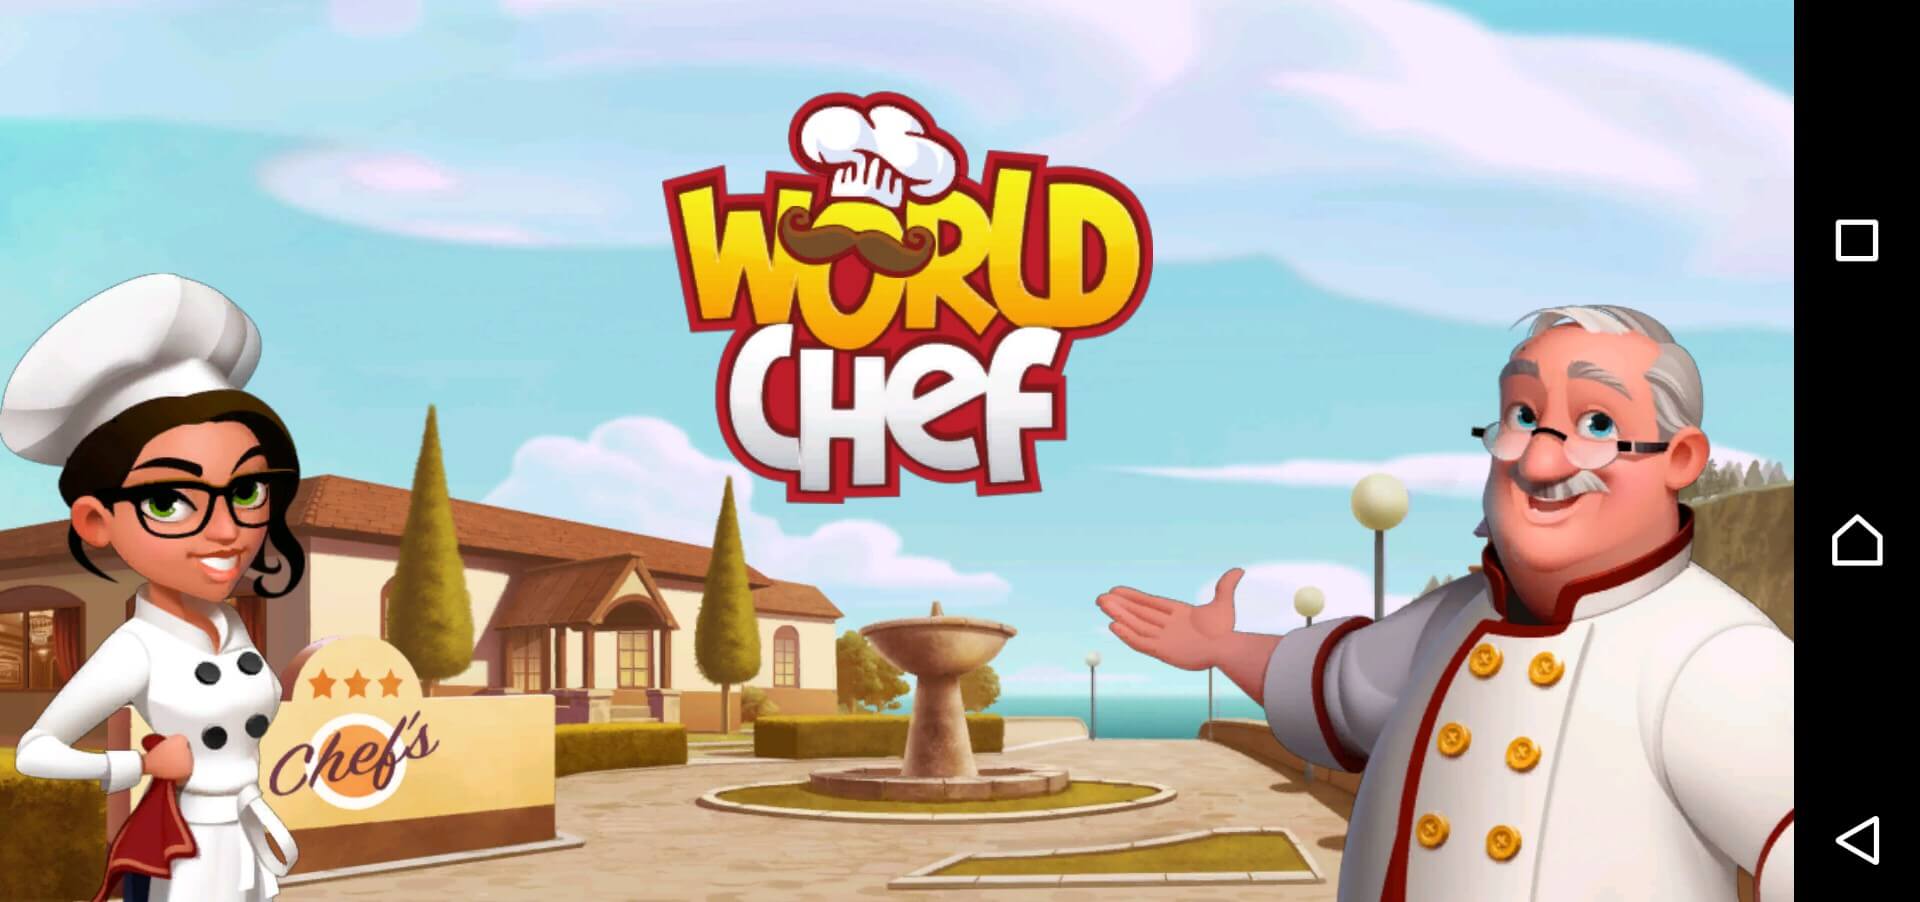 World Chefのタイトル画面です。